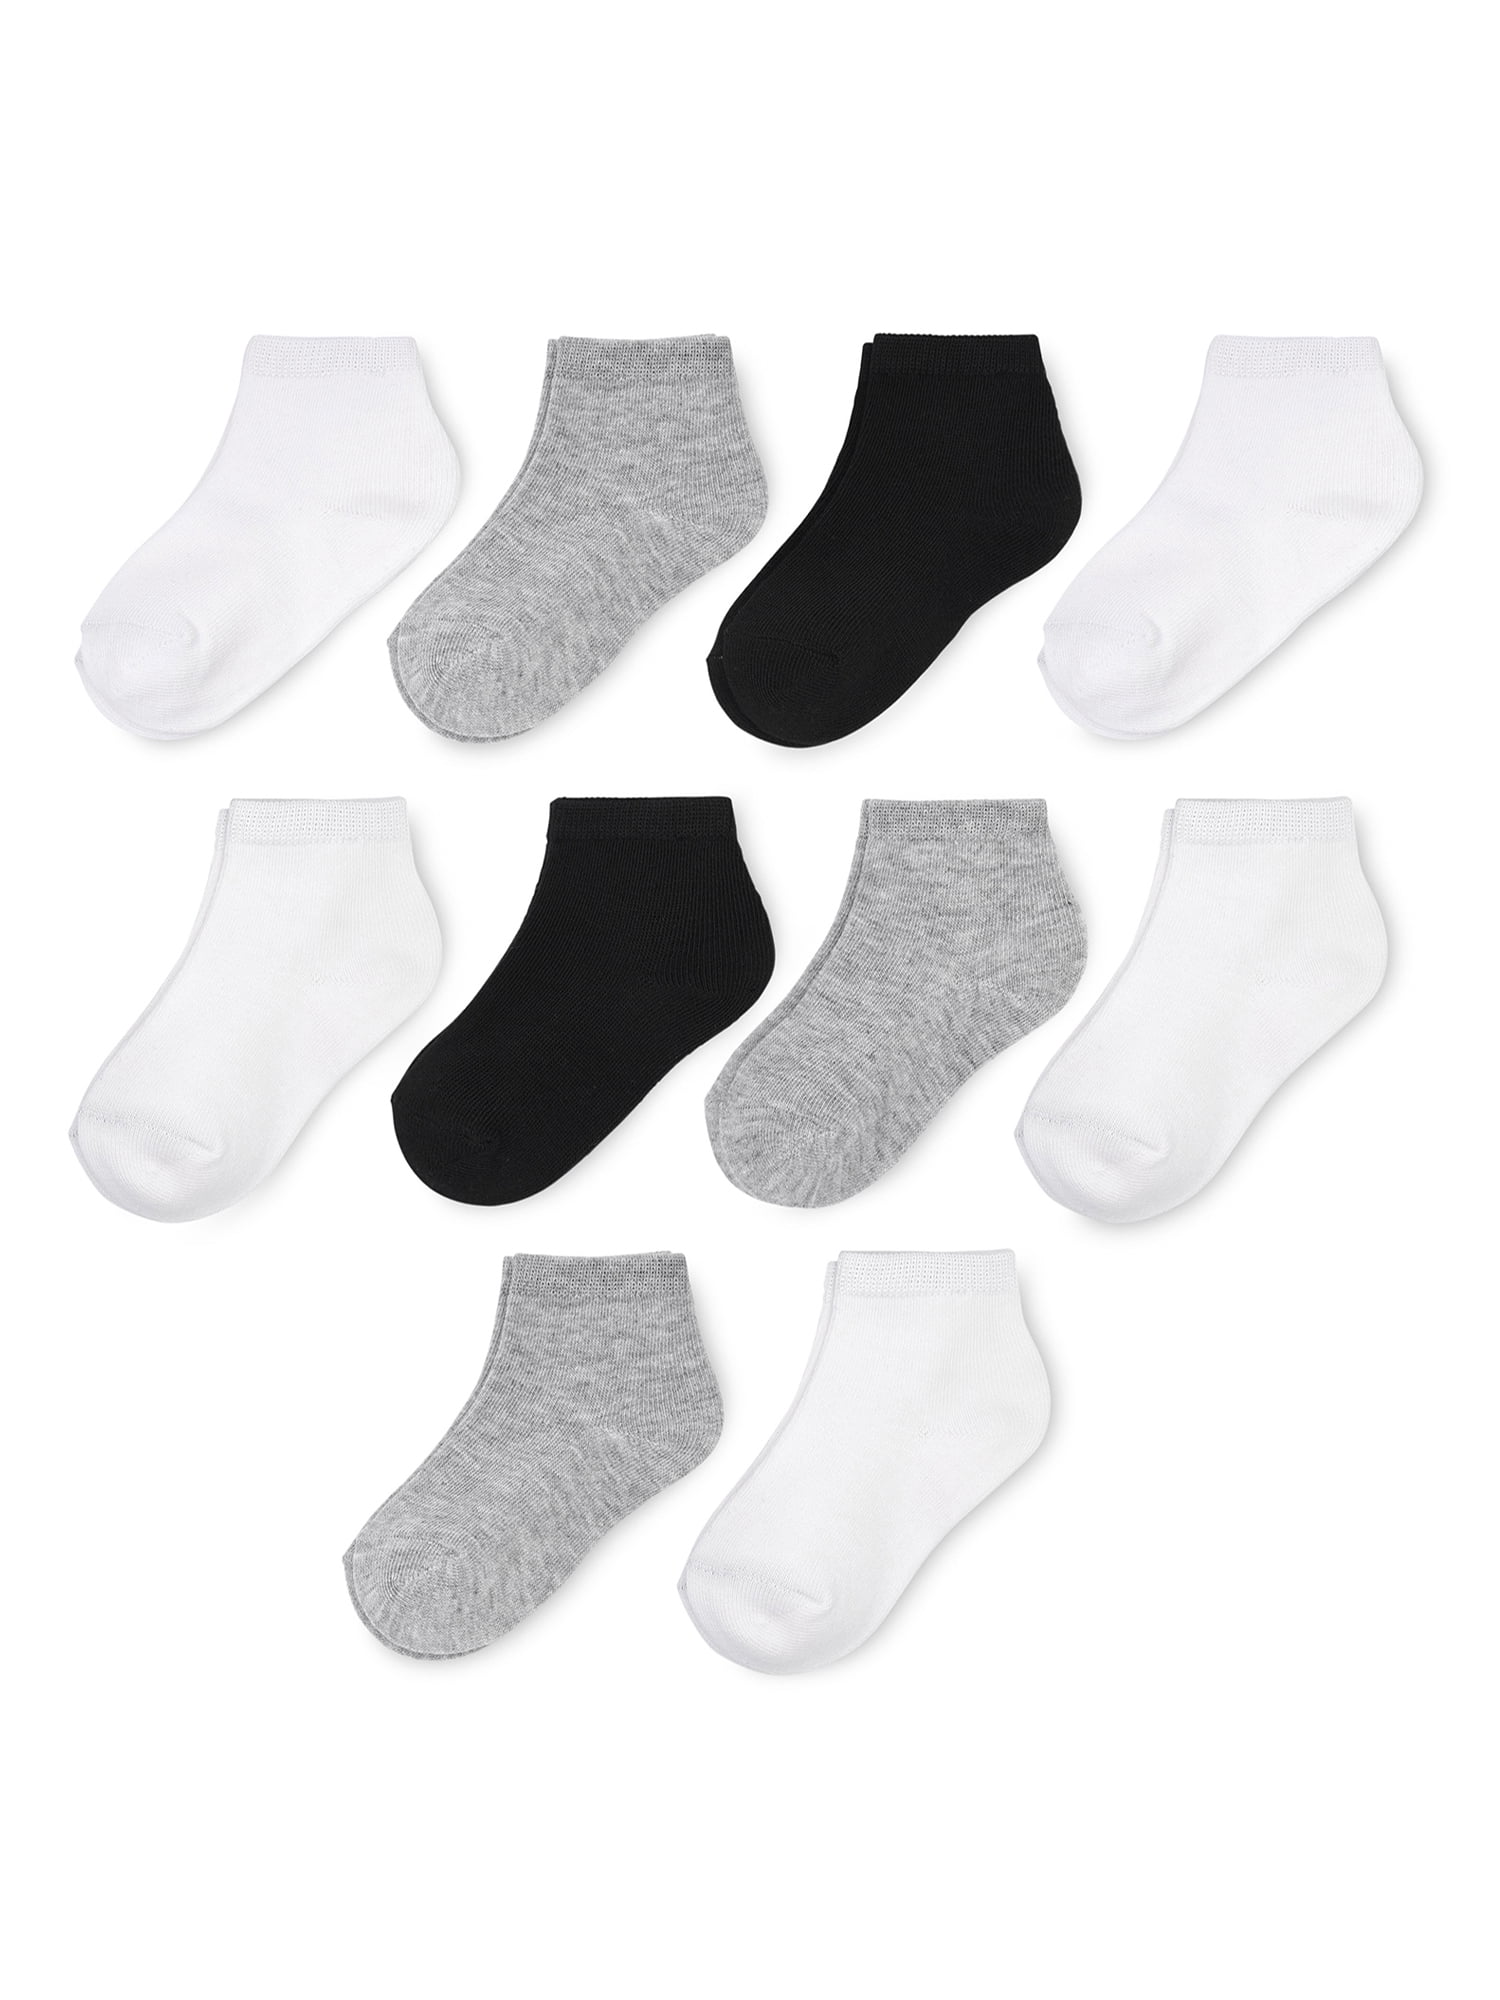 Wonder Nation Boys Ankle Socks, 10 Pack, Size 6M- 18M - Walmart.com